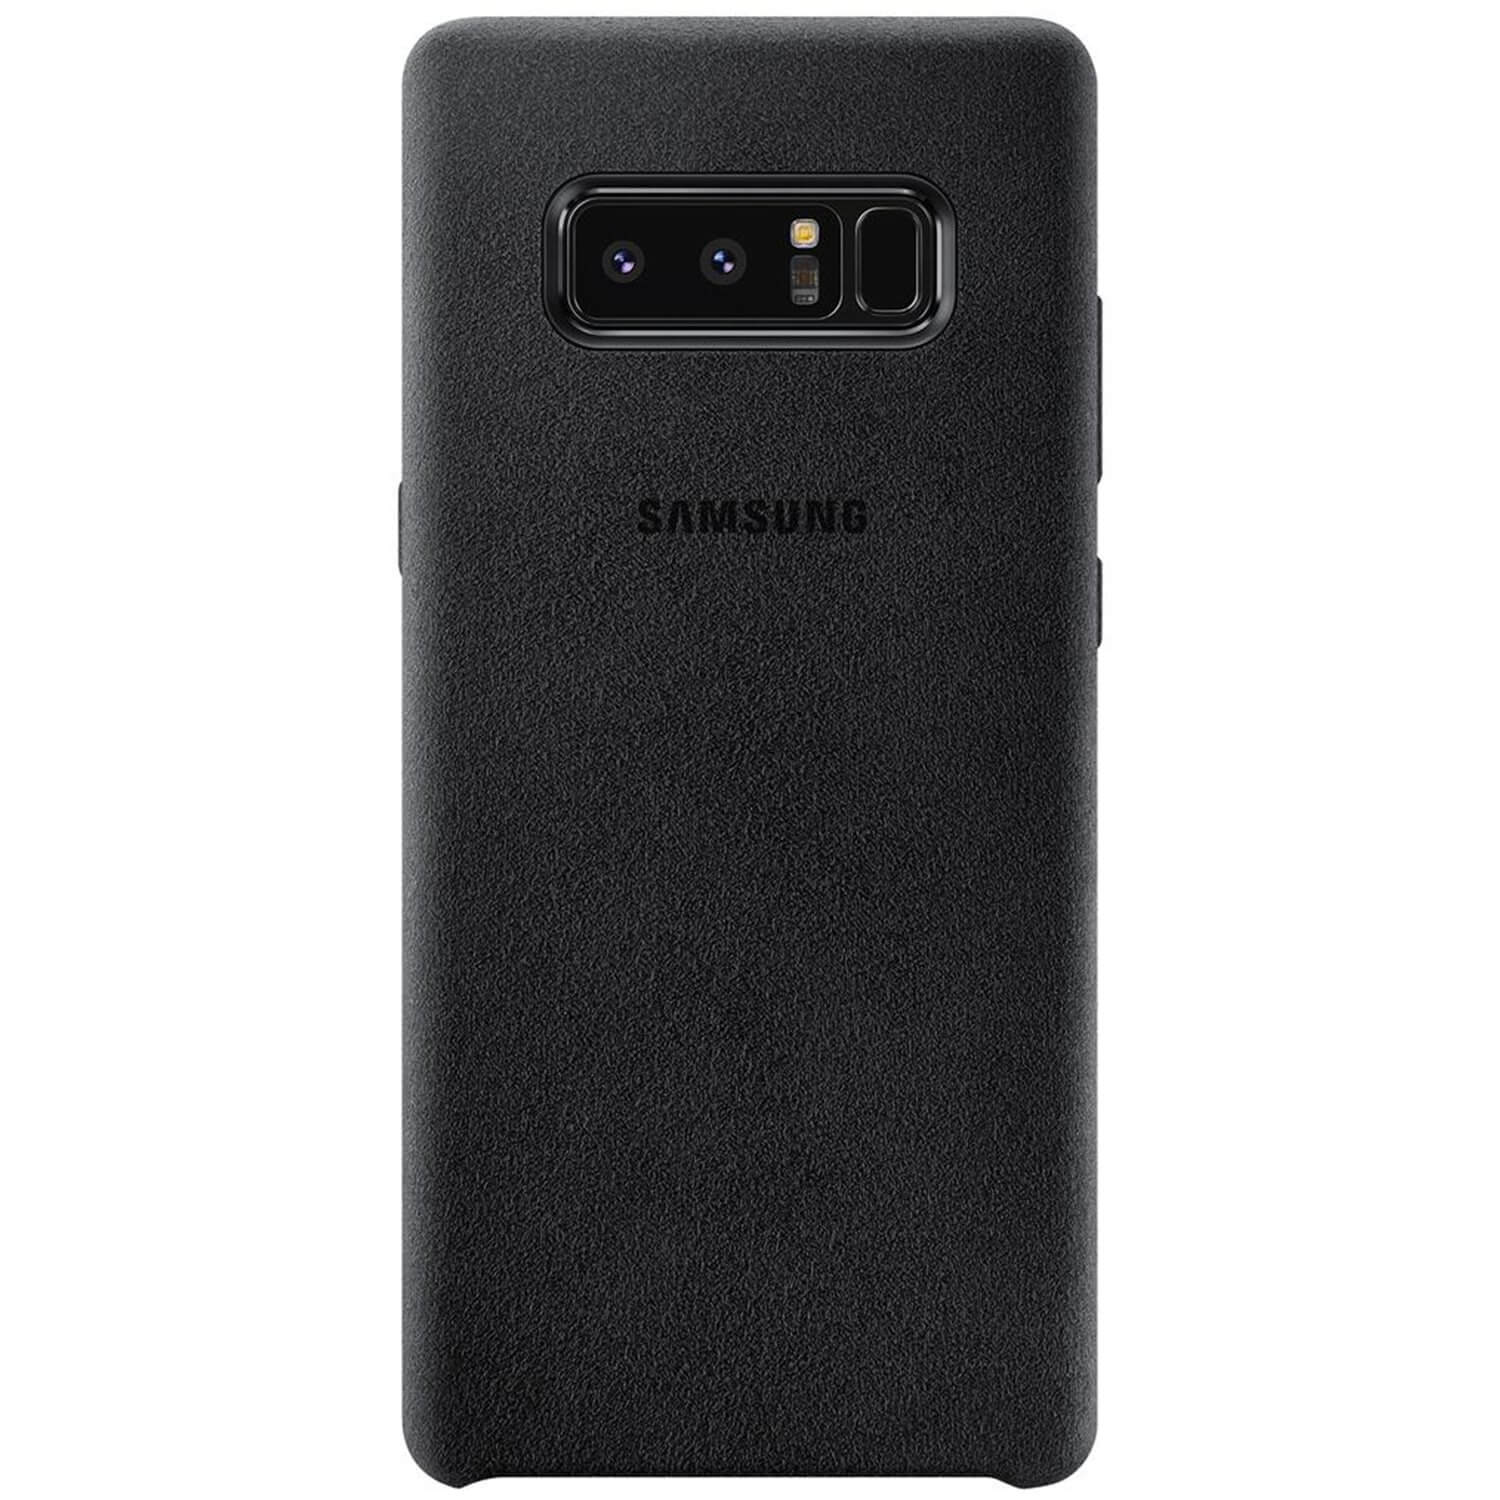 Husa Alcantara Samsung EF-XN950ABEGWW pentru Galaxy Note 8, Negru